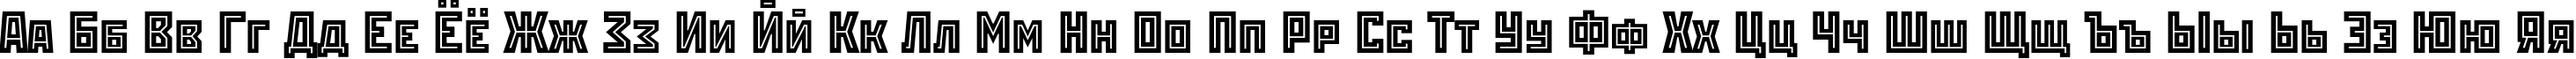 Пример написания русского алфавита шрифтом StenbergInlineITC